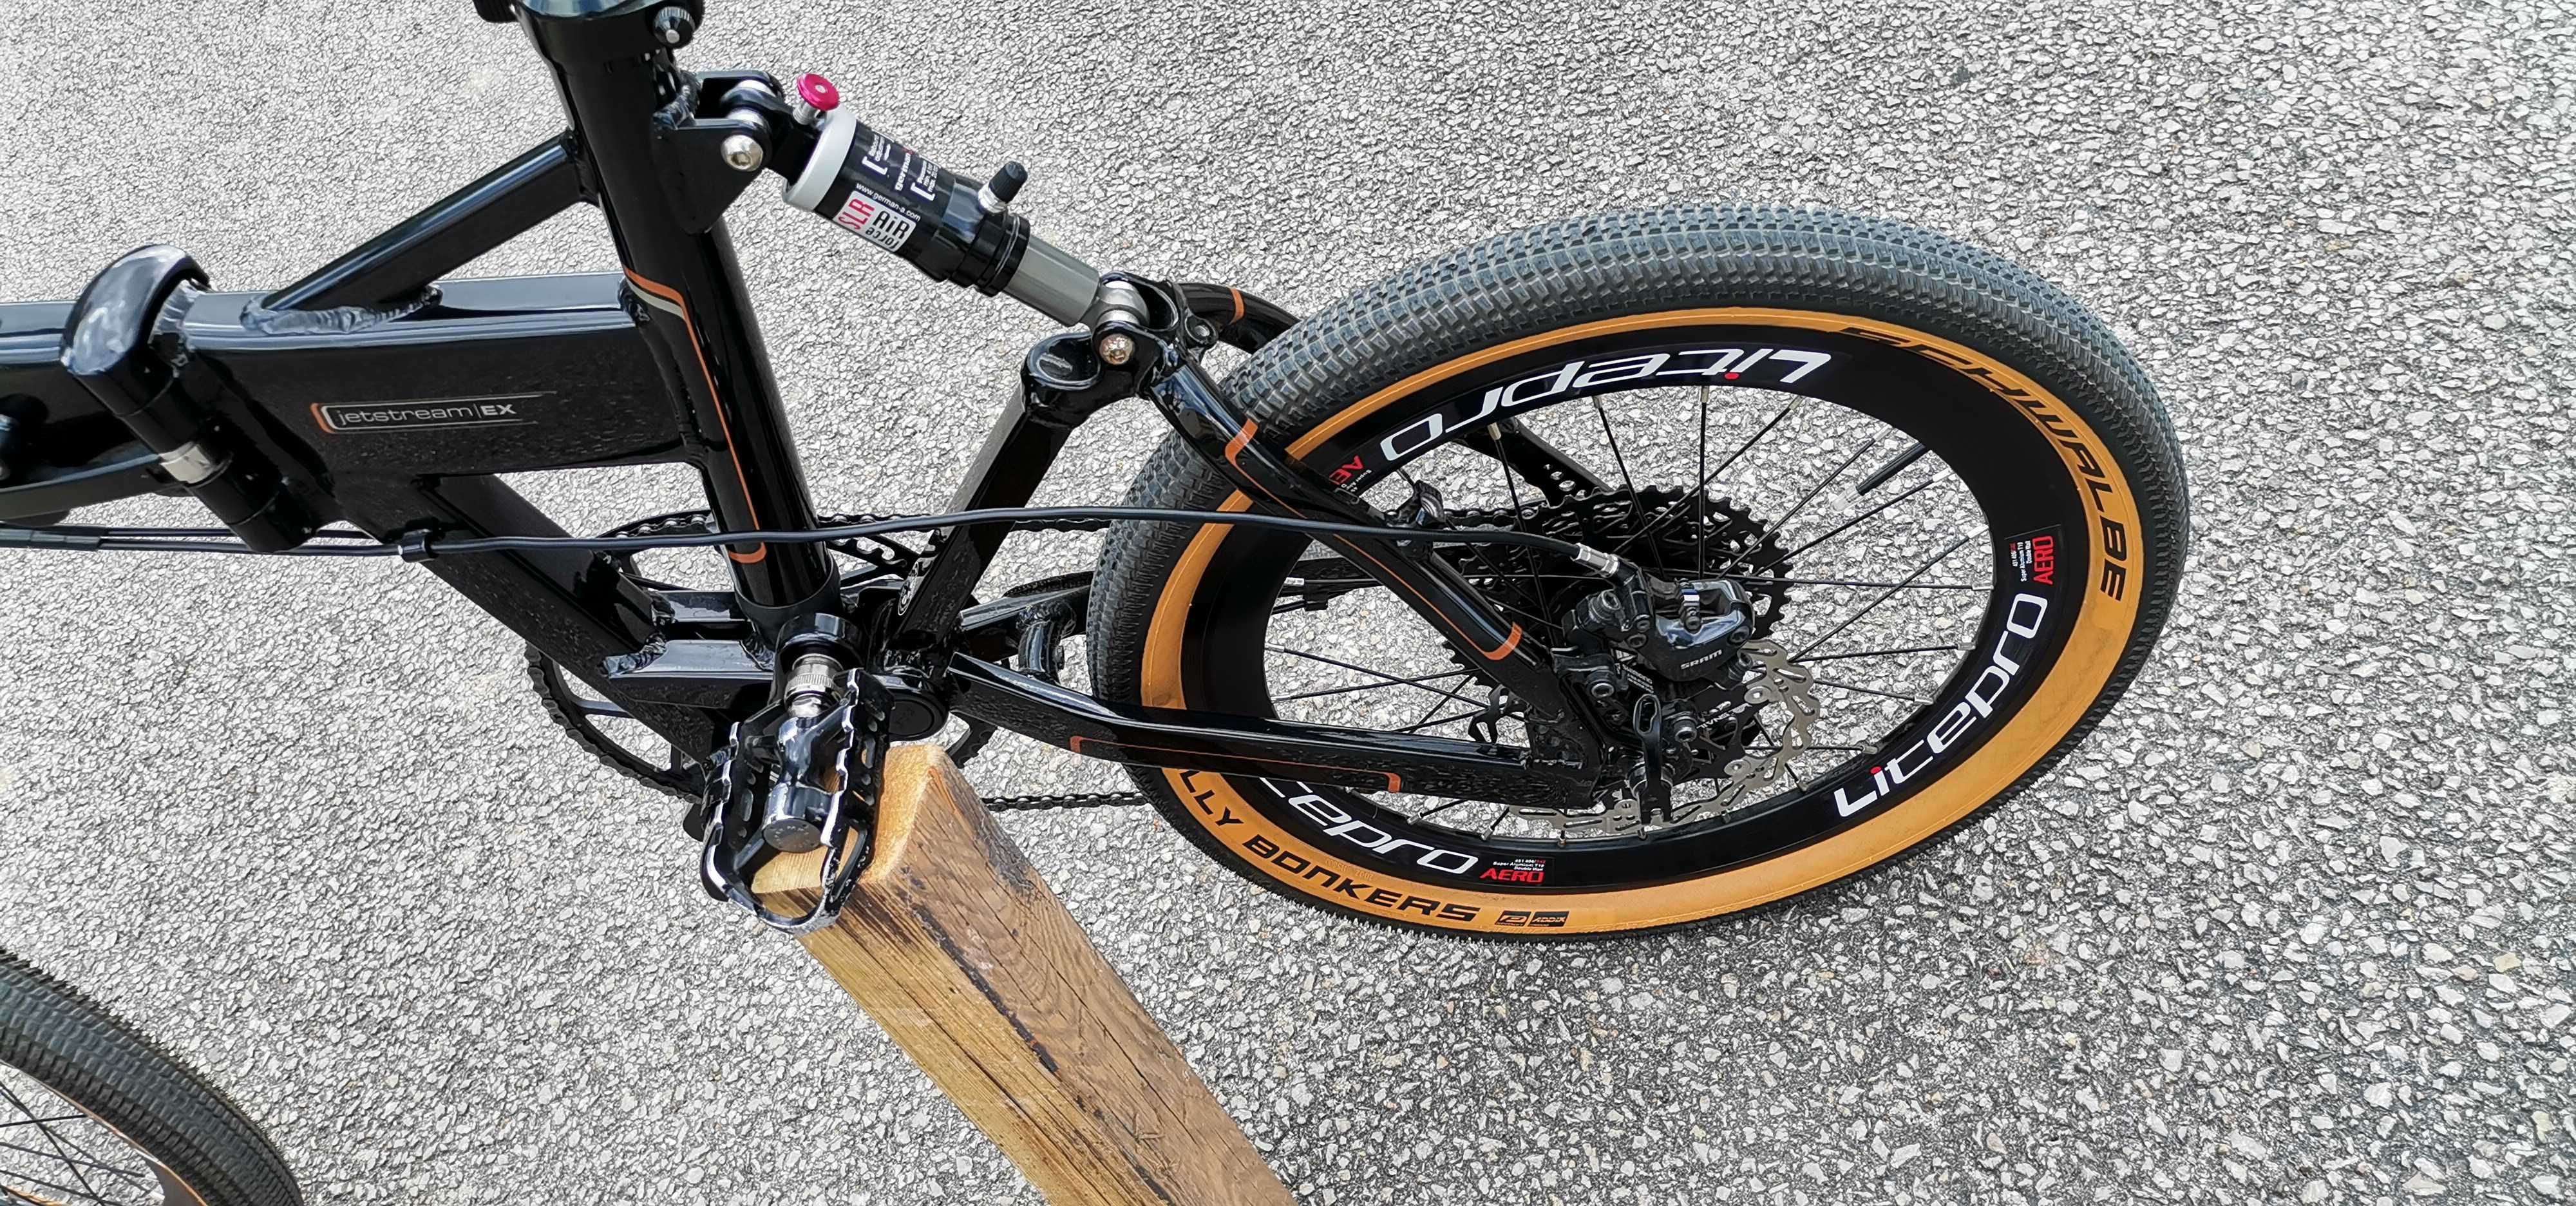 Bicicleta dobrável Dahon Jetstream EX modificada